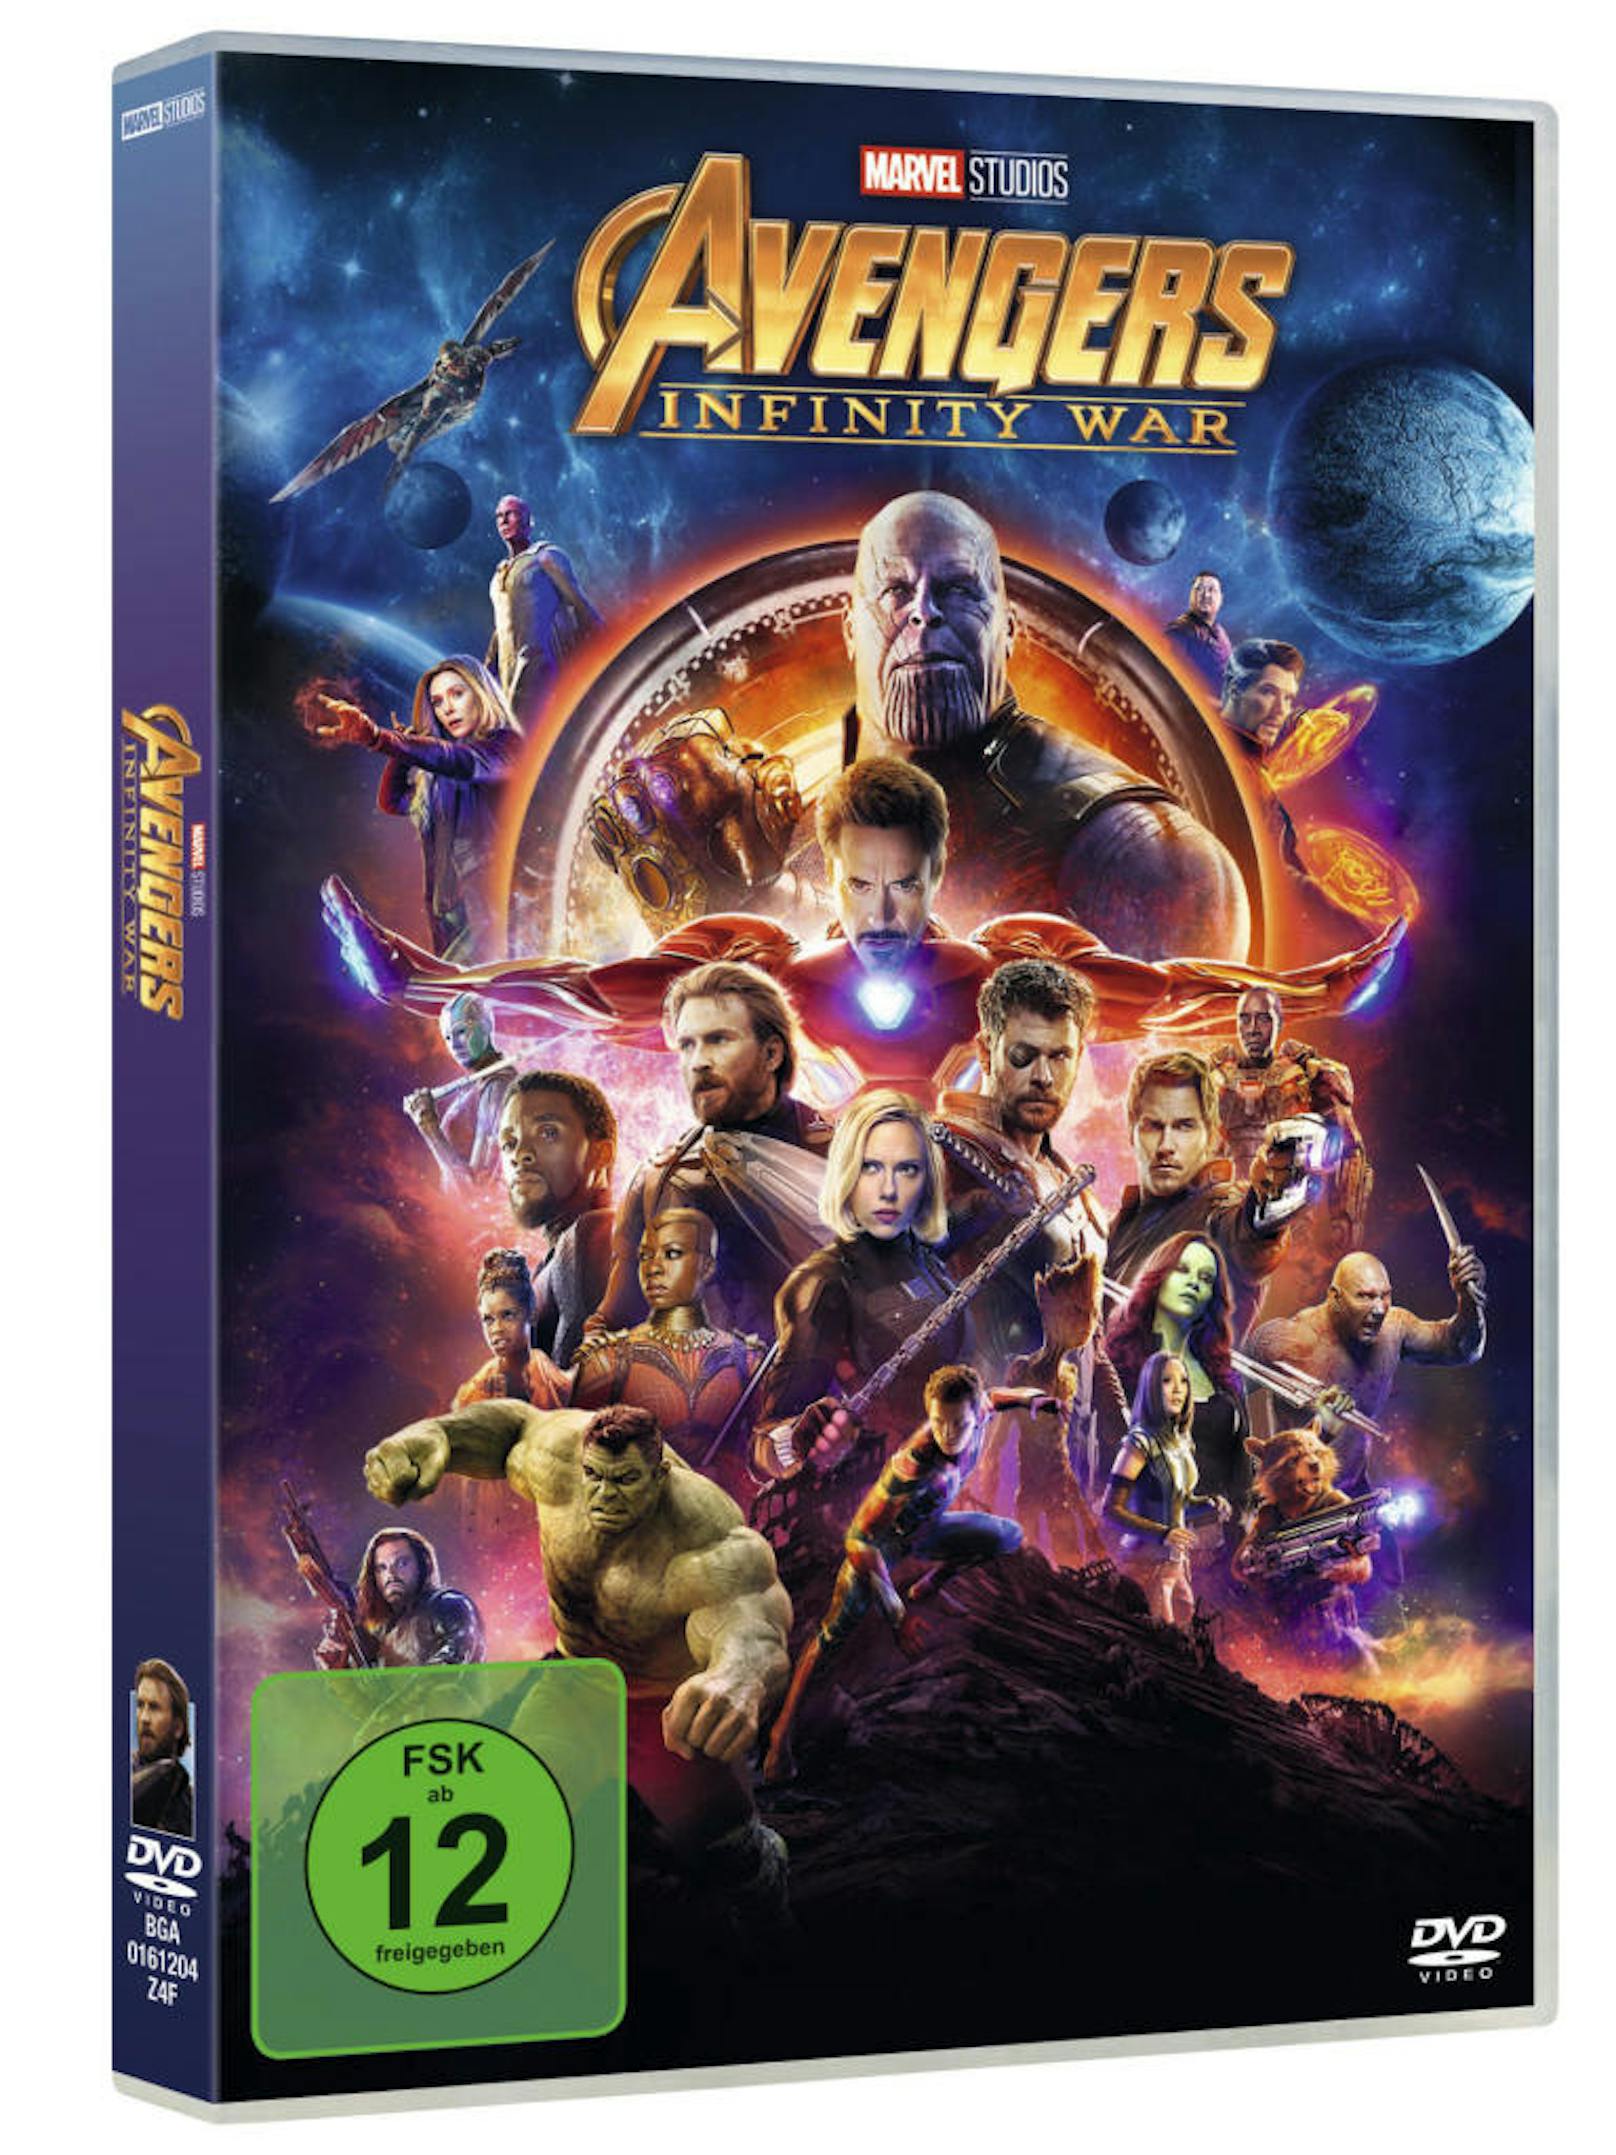 DVD von "Avengers: Infinity War"